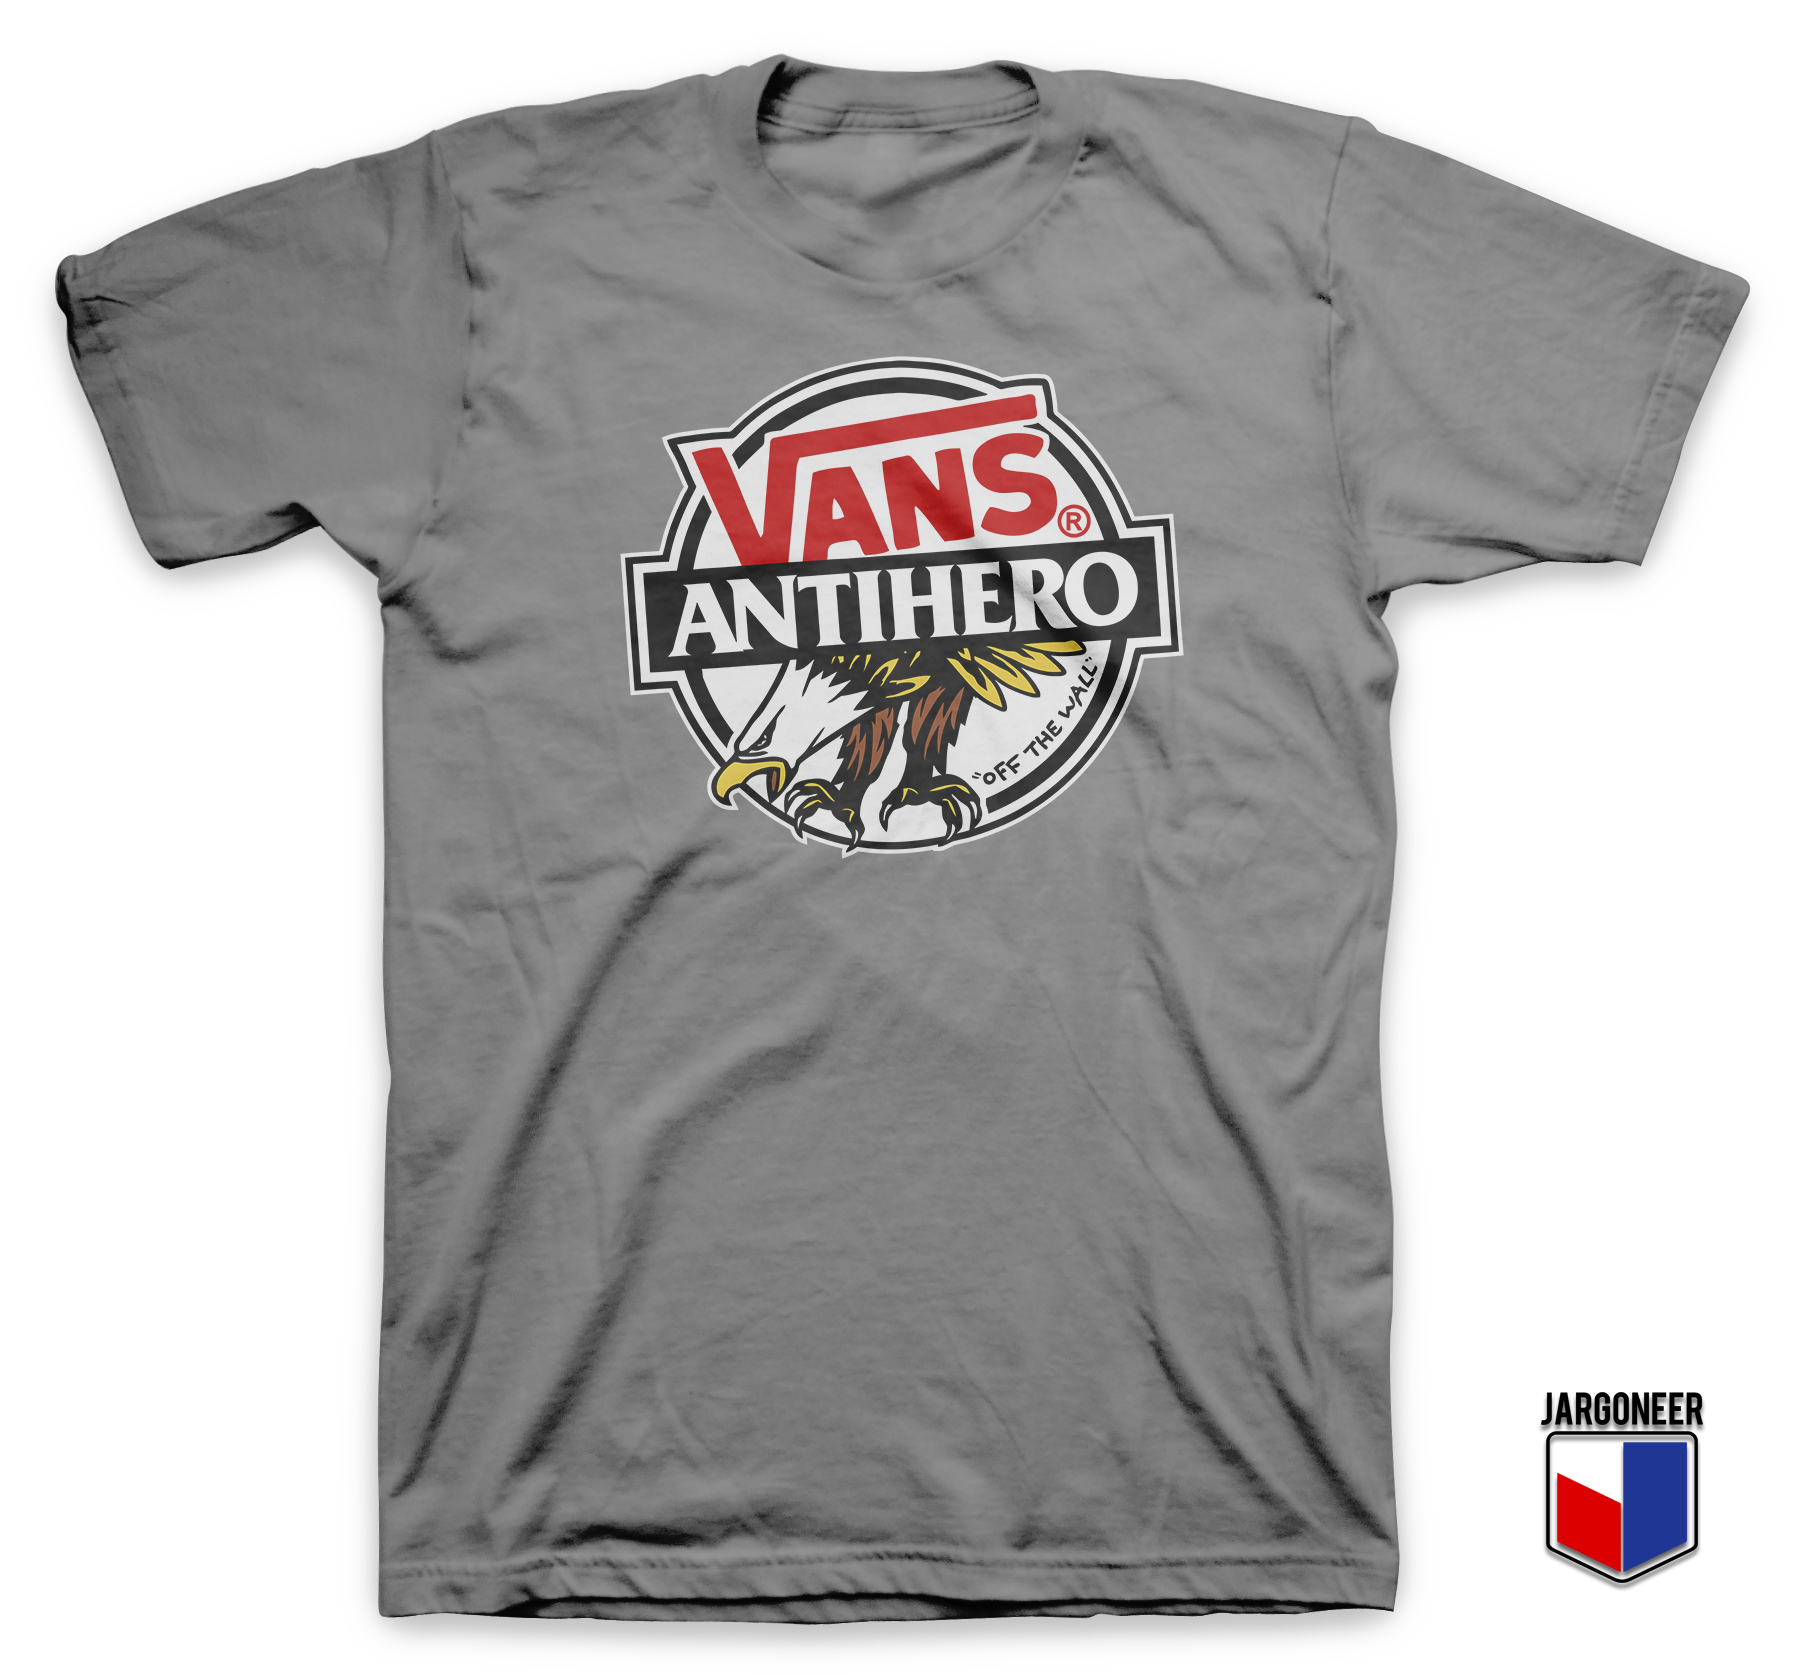 Cool Vans X Antihero T Shirt By jargoneer.com